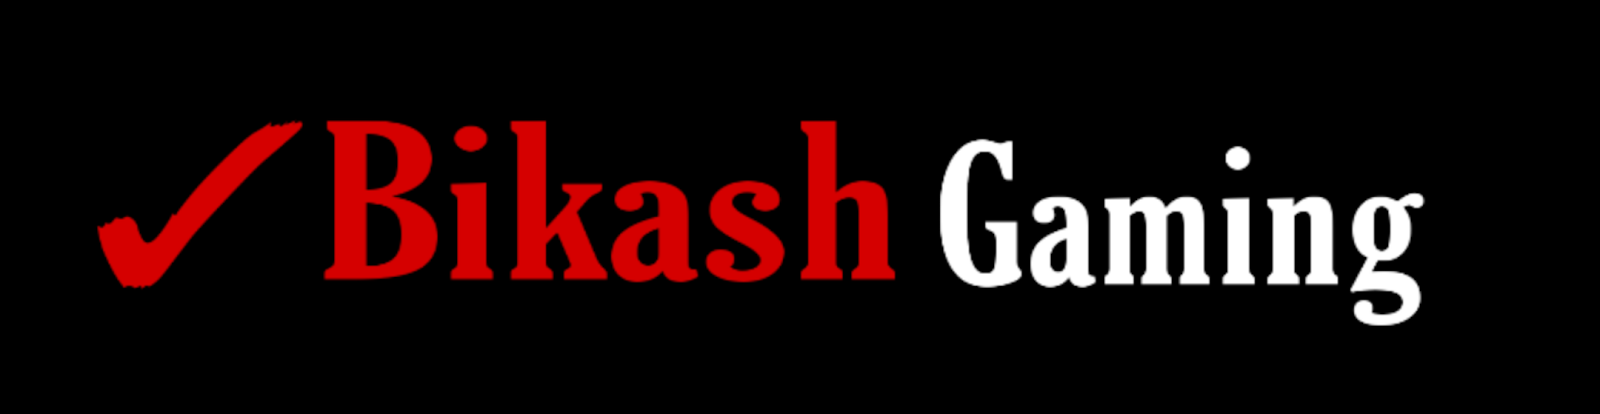 Bikash Gaming